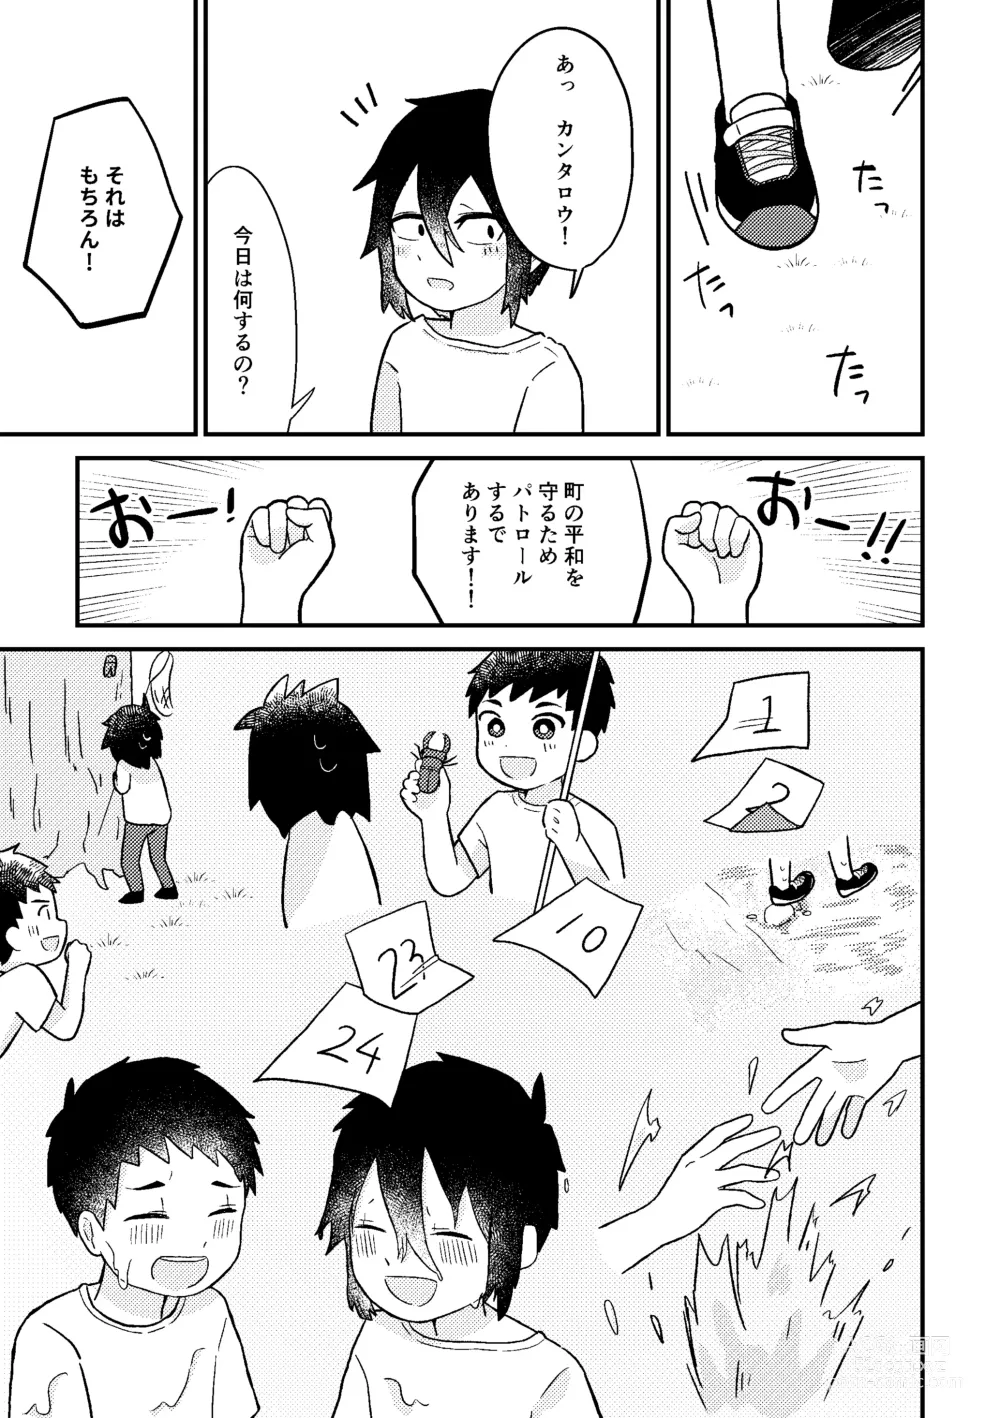 Page 18 of doujinshi Saigo no Natsuyasumi